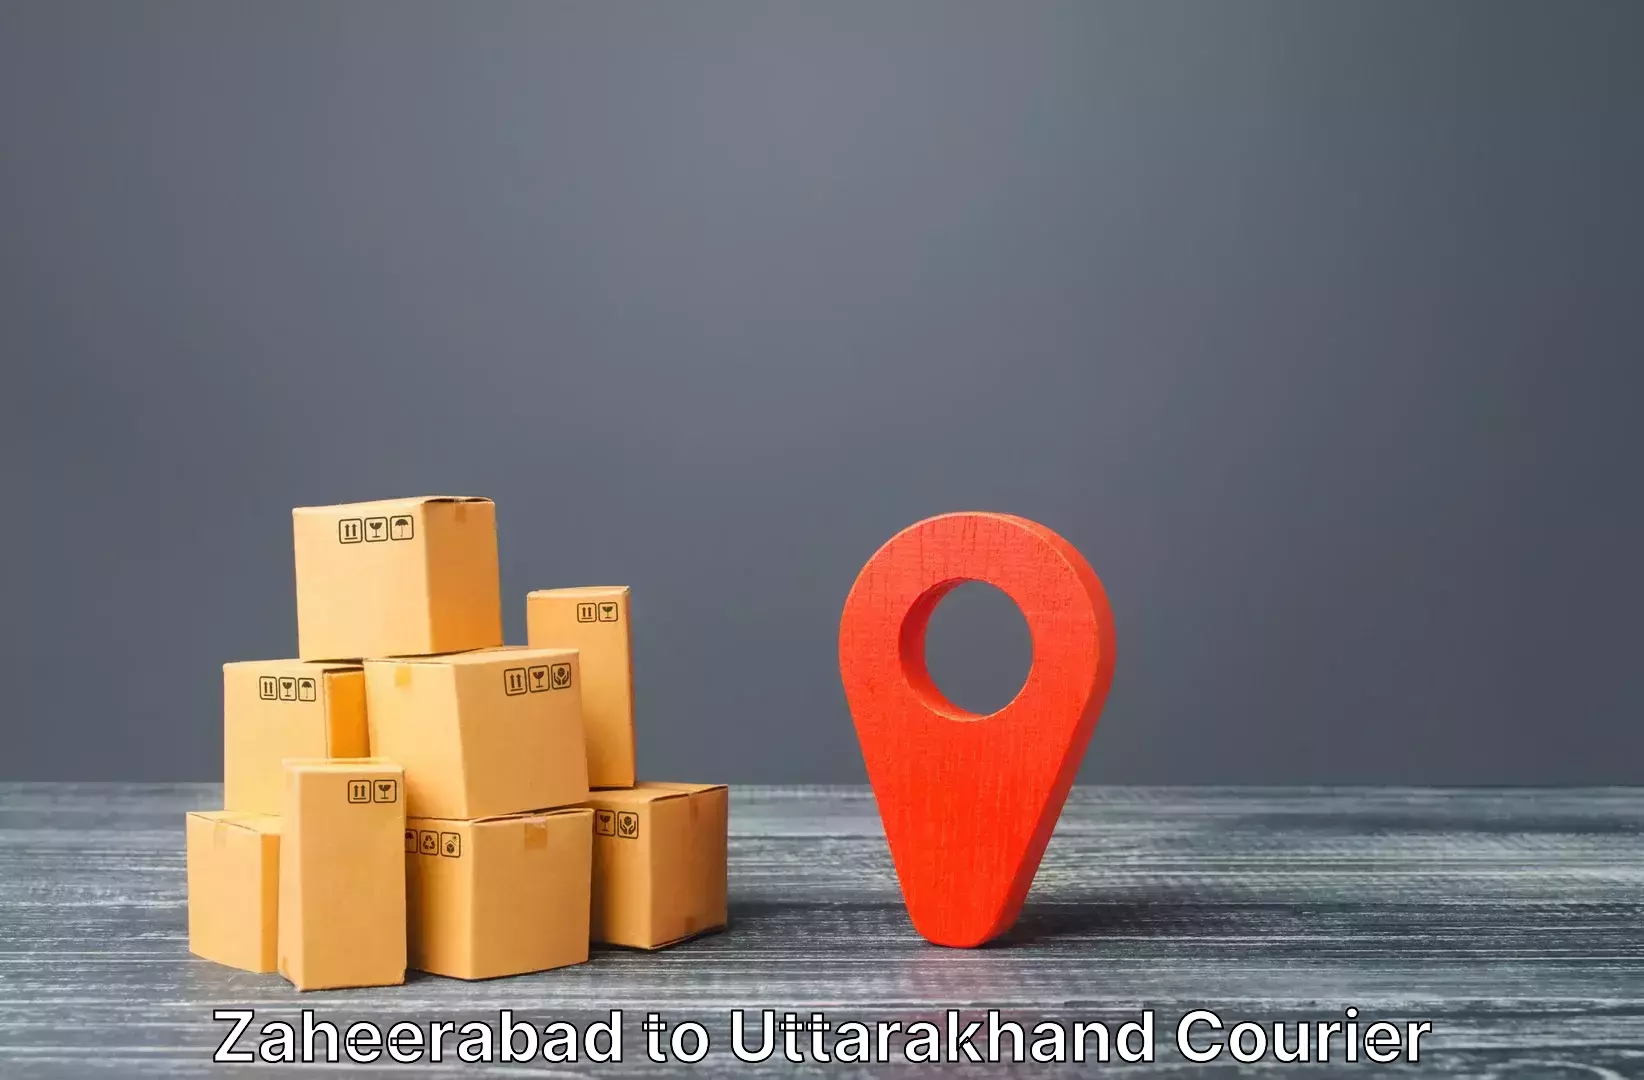 Luggage shipment processing Zaheerabad to Uttarakhand